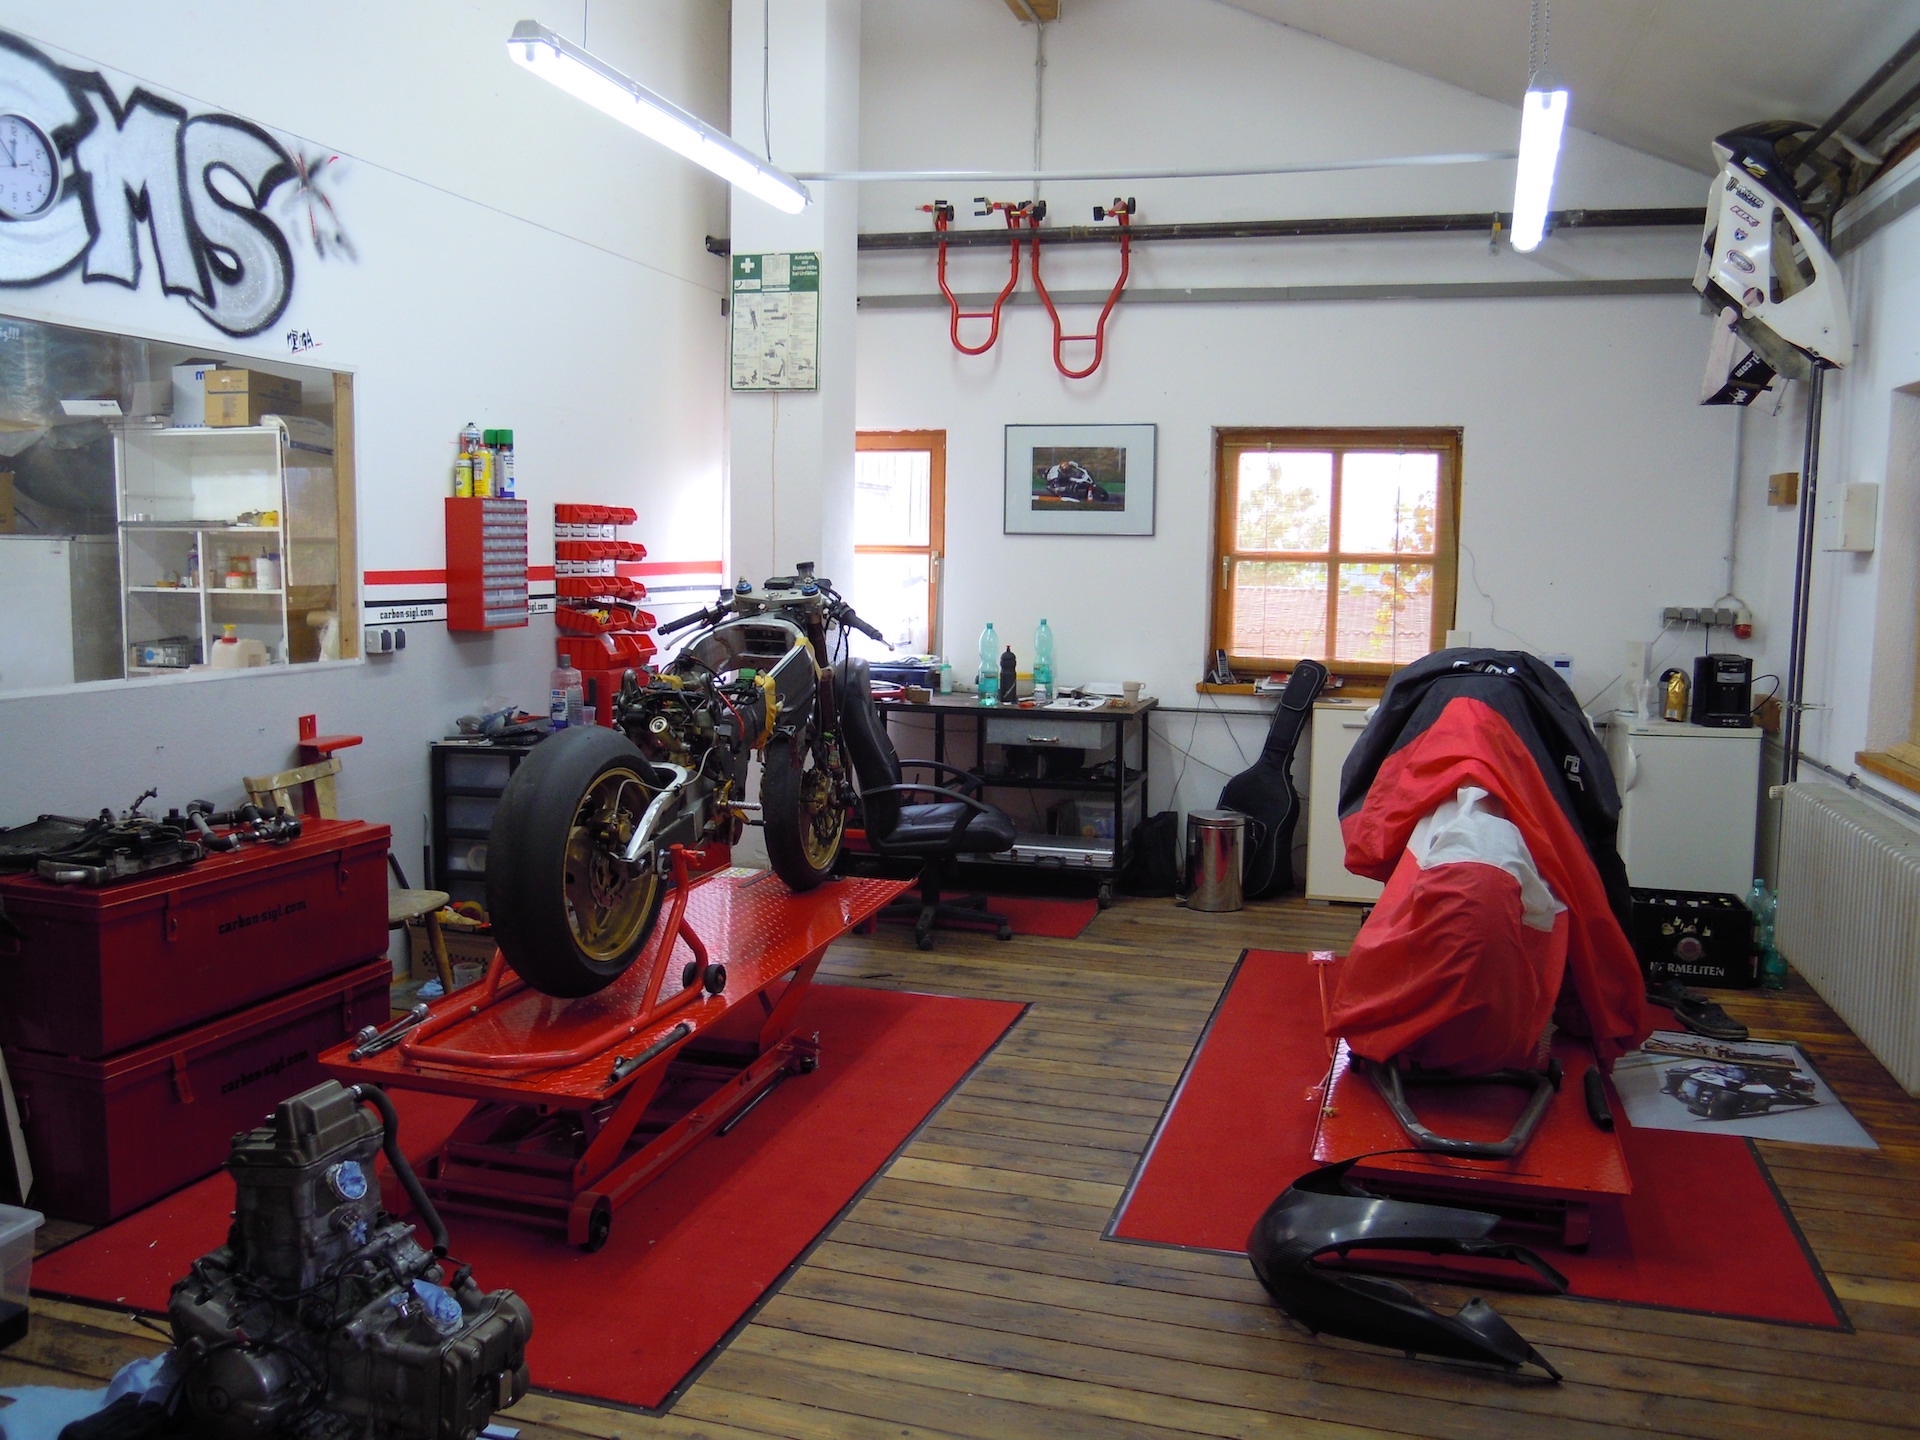 Motorrad in Werkstatt 2 - Carbon Sigl